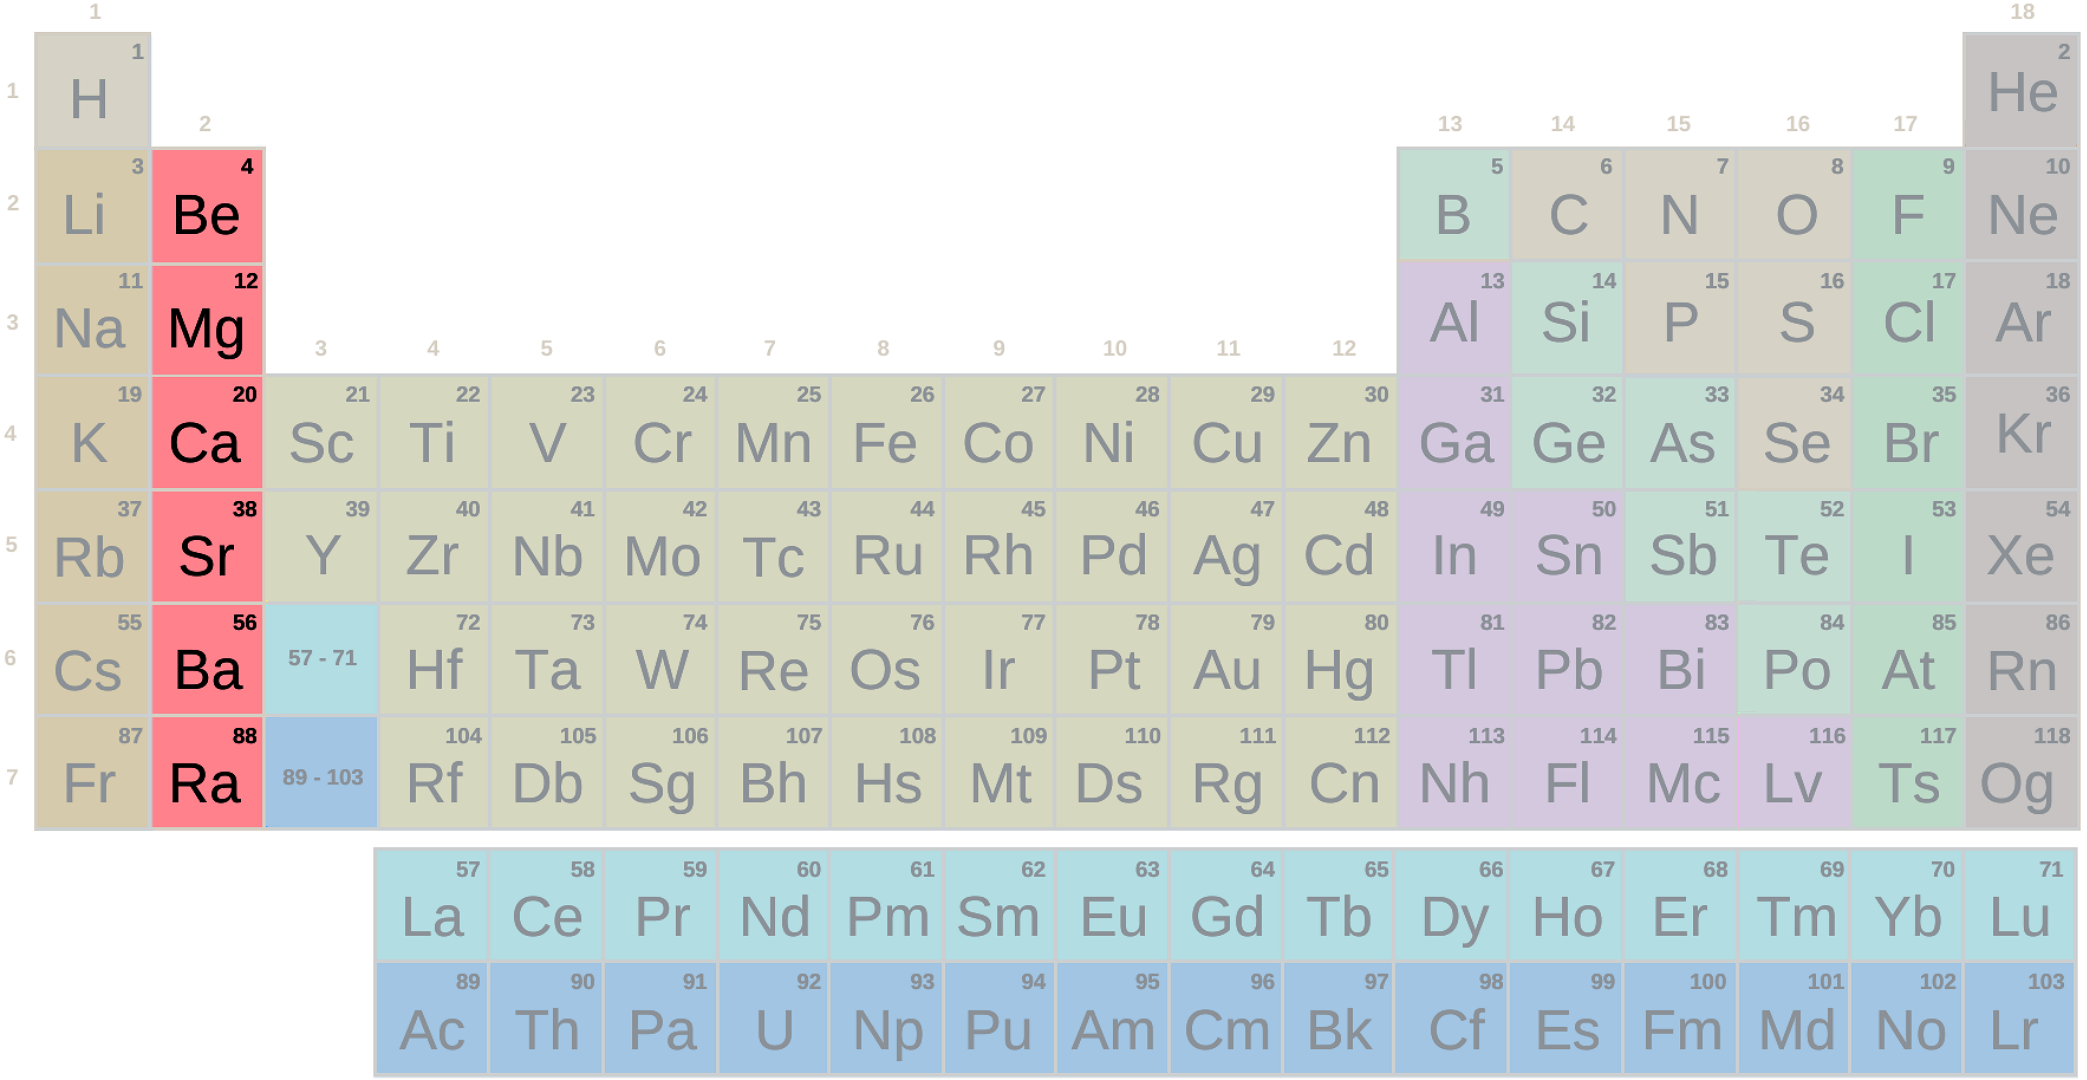 Tabela periódica, grupo alcalino-terroso com símbolos (difícil)